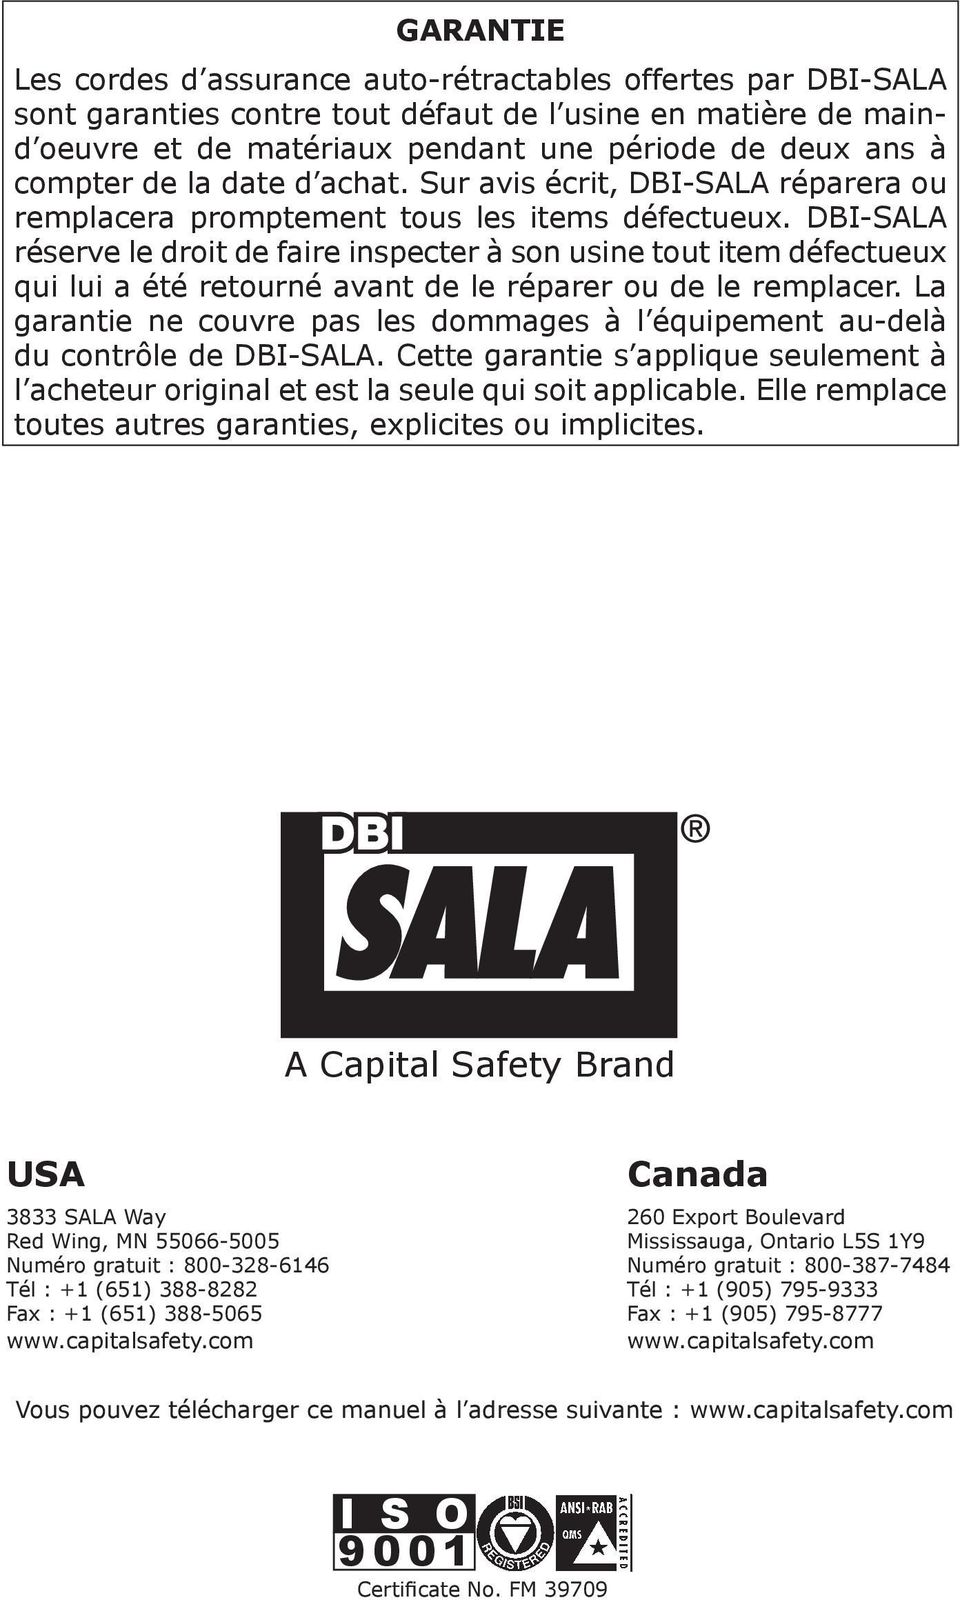 DBI-SALA réserve le droit de faire inspecter à son usine tout item défectueux qui lui a été retourné avant de le réparer ou de le remplacer.